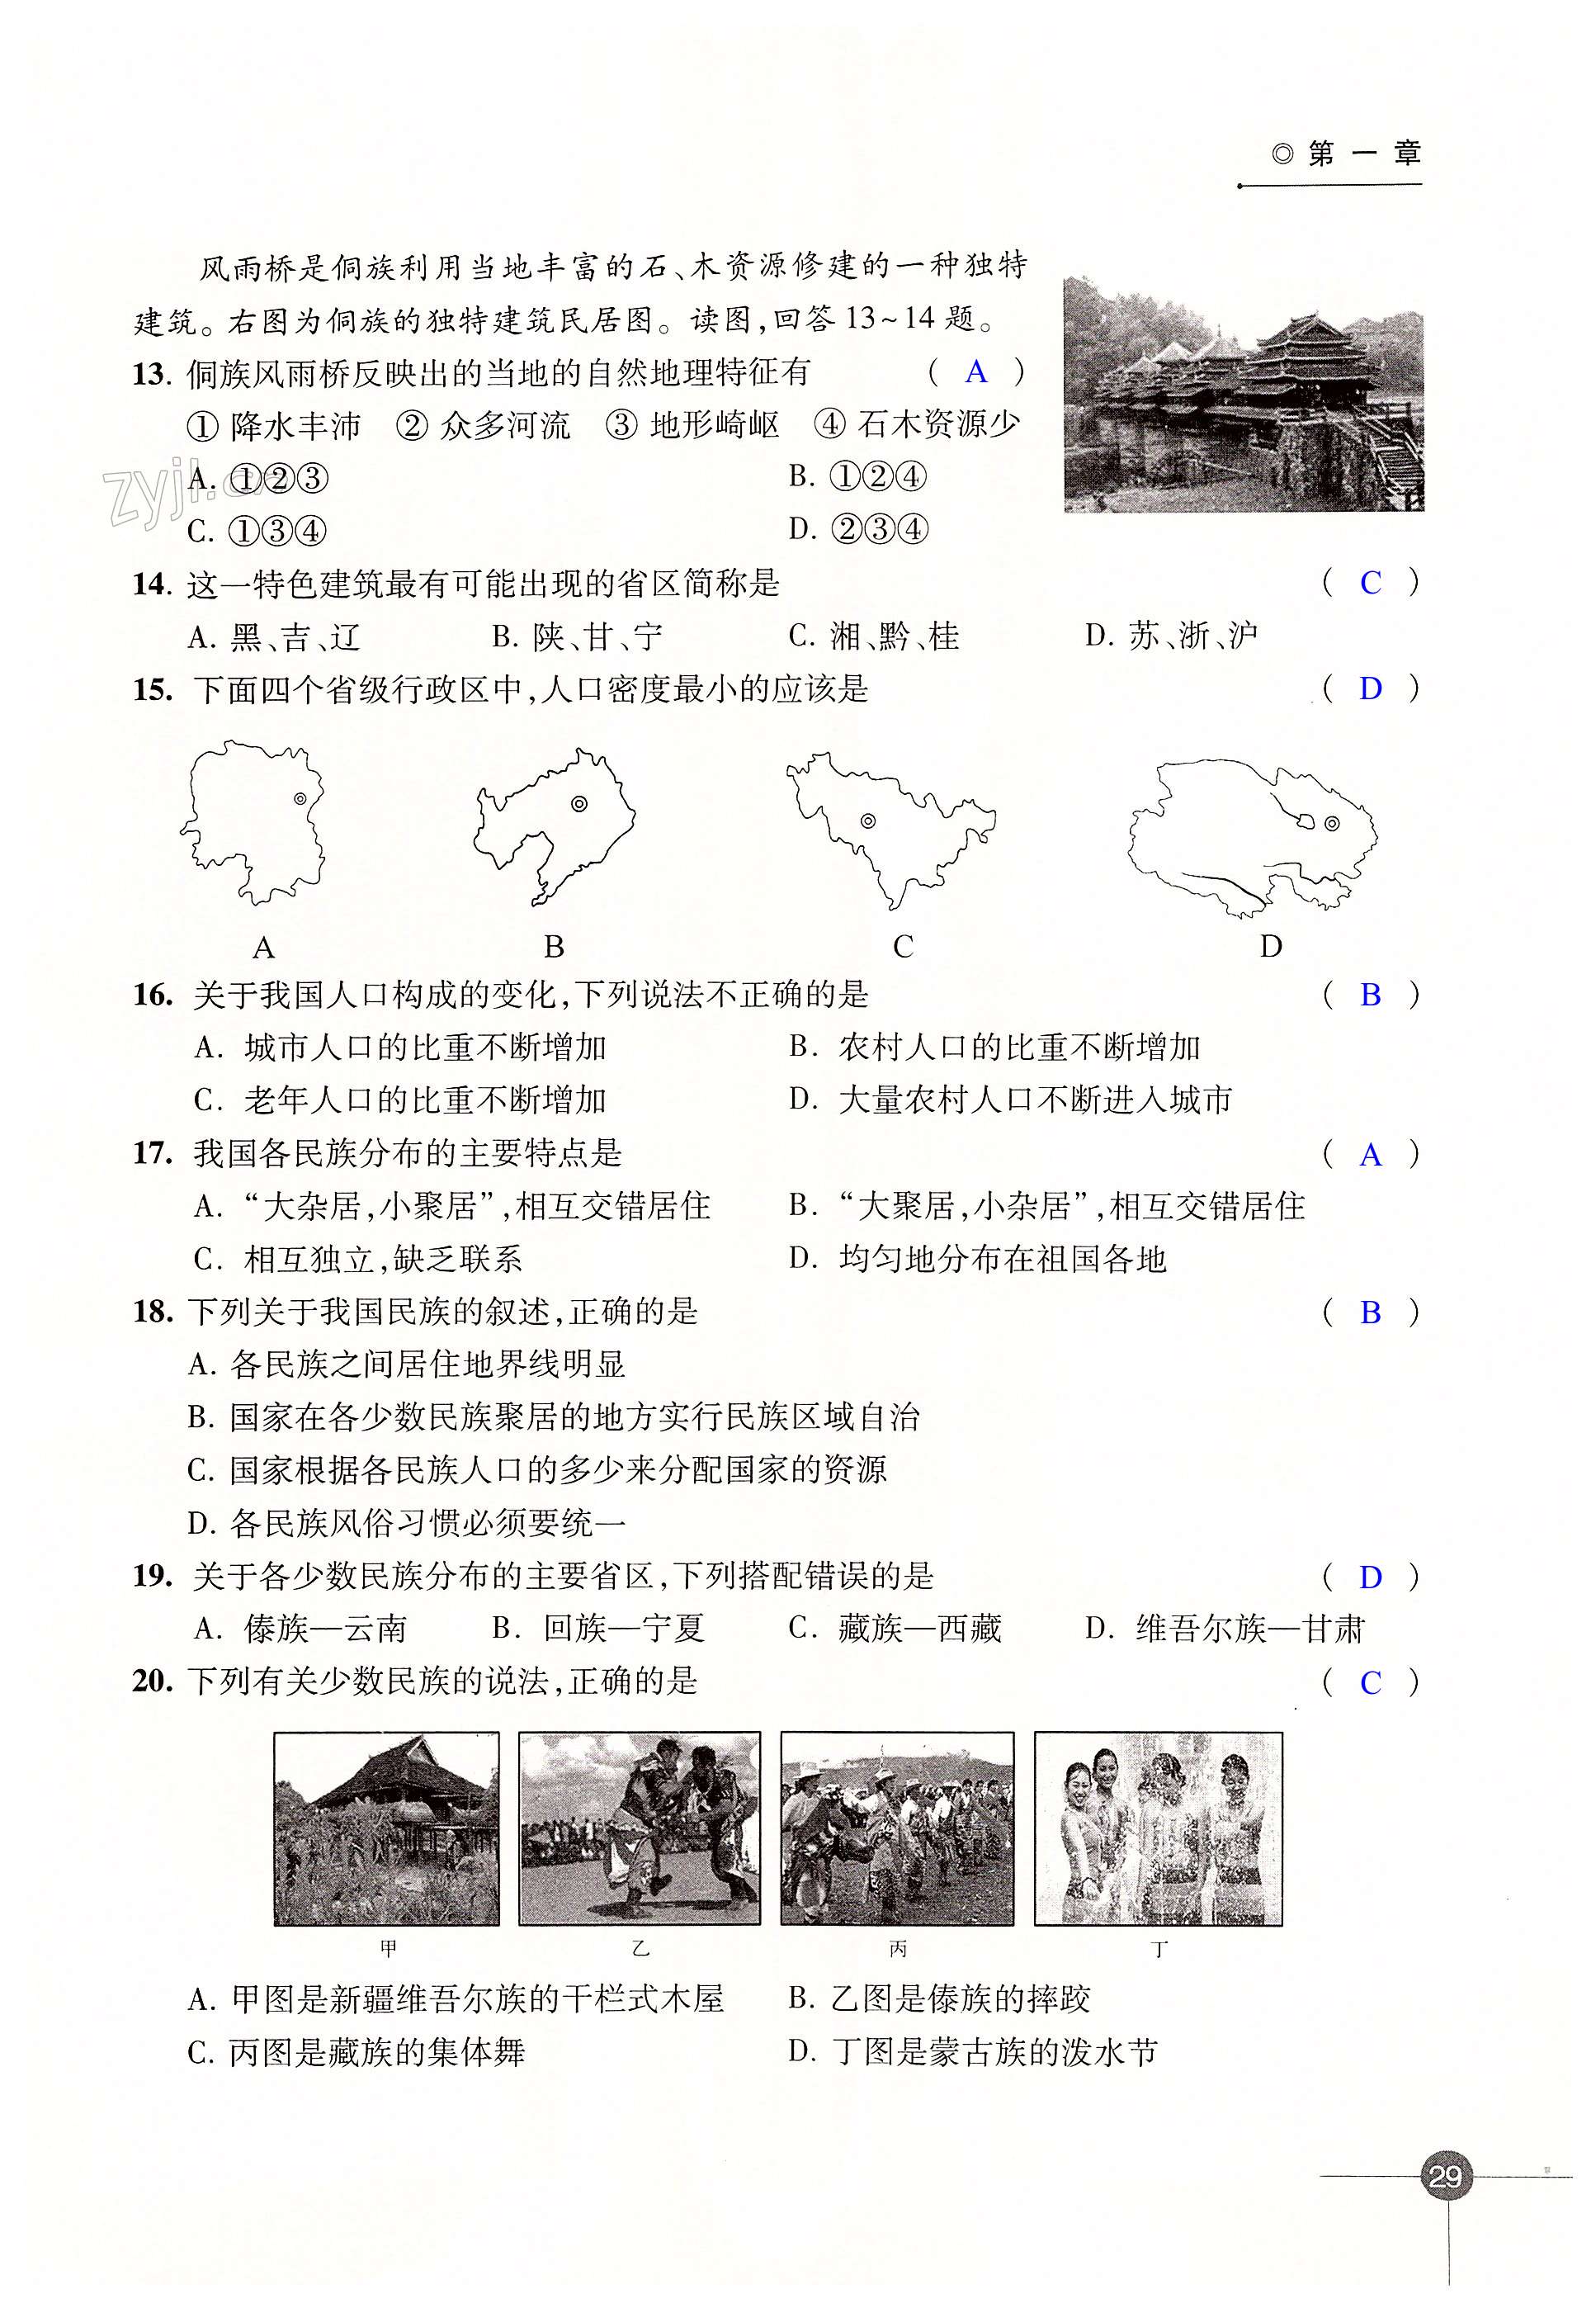 第一章 中国的疆域与人口 - 第29页